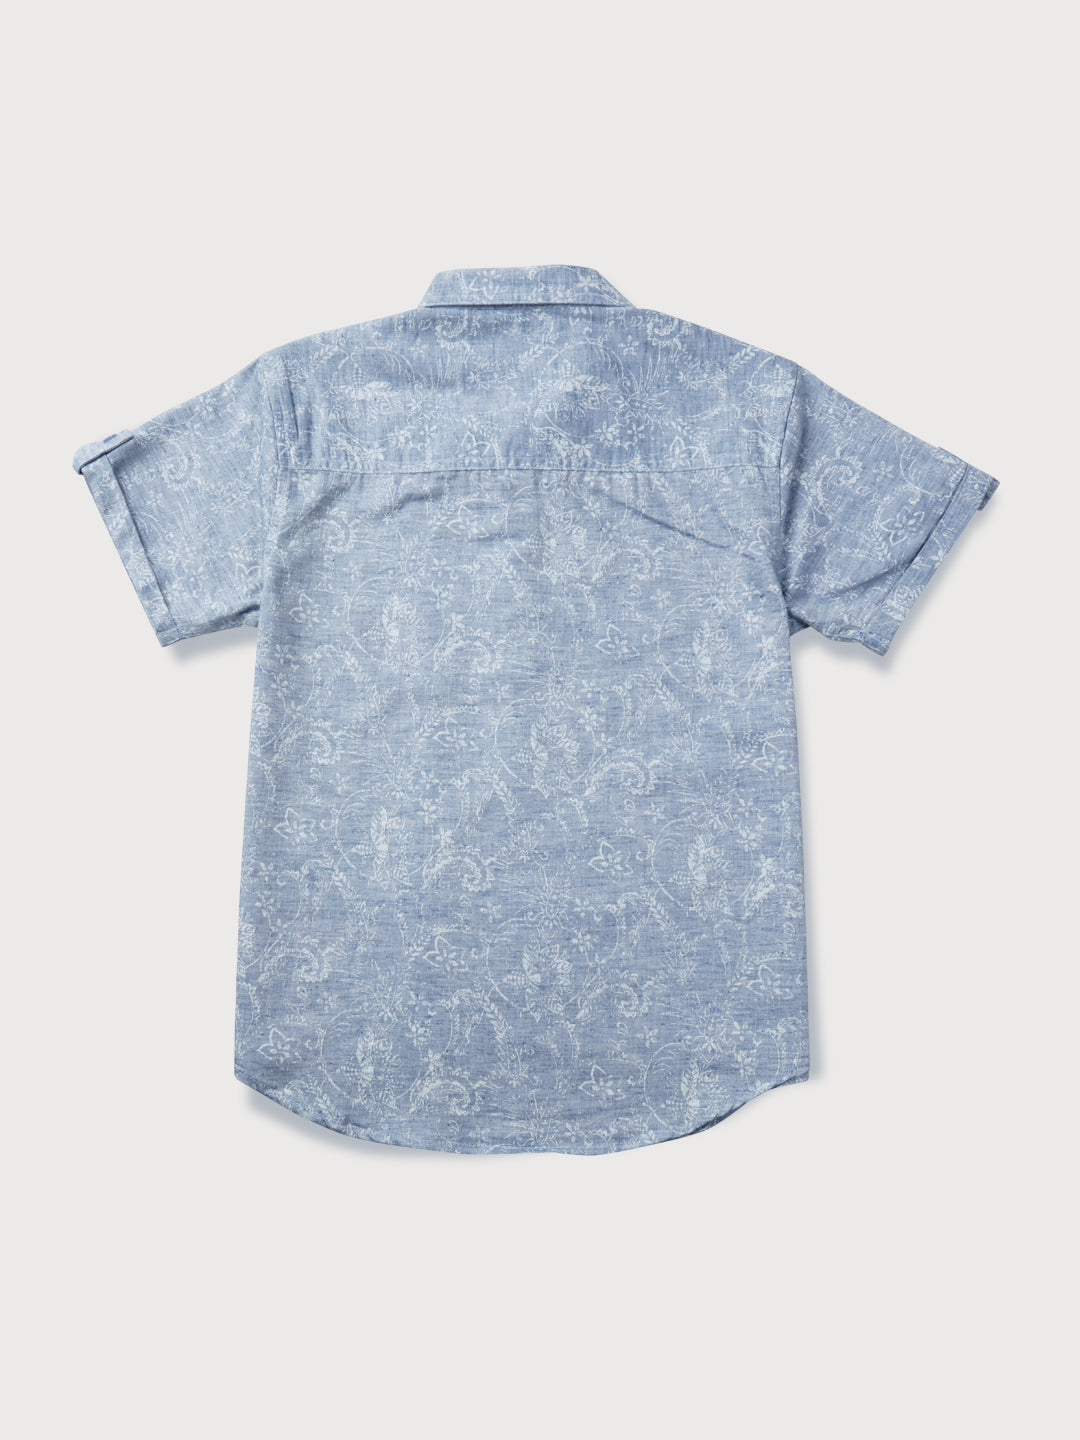 Boys Grey Printed Knits Shirt